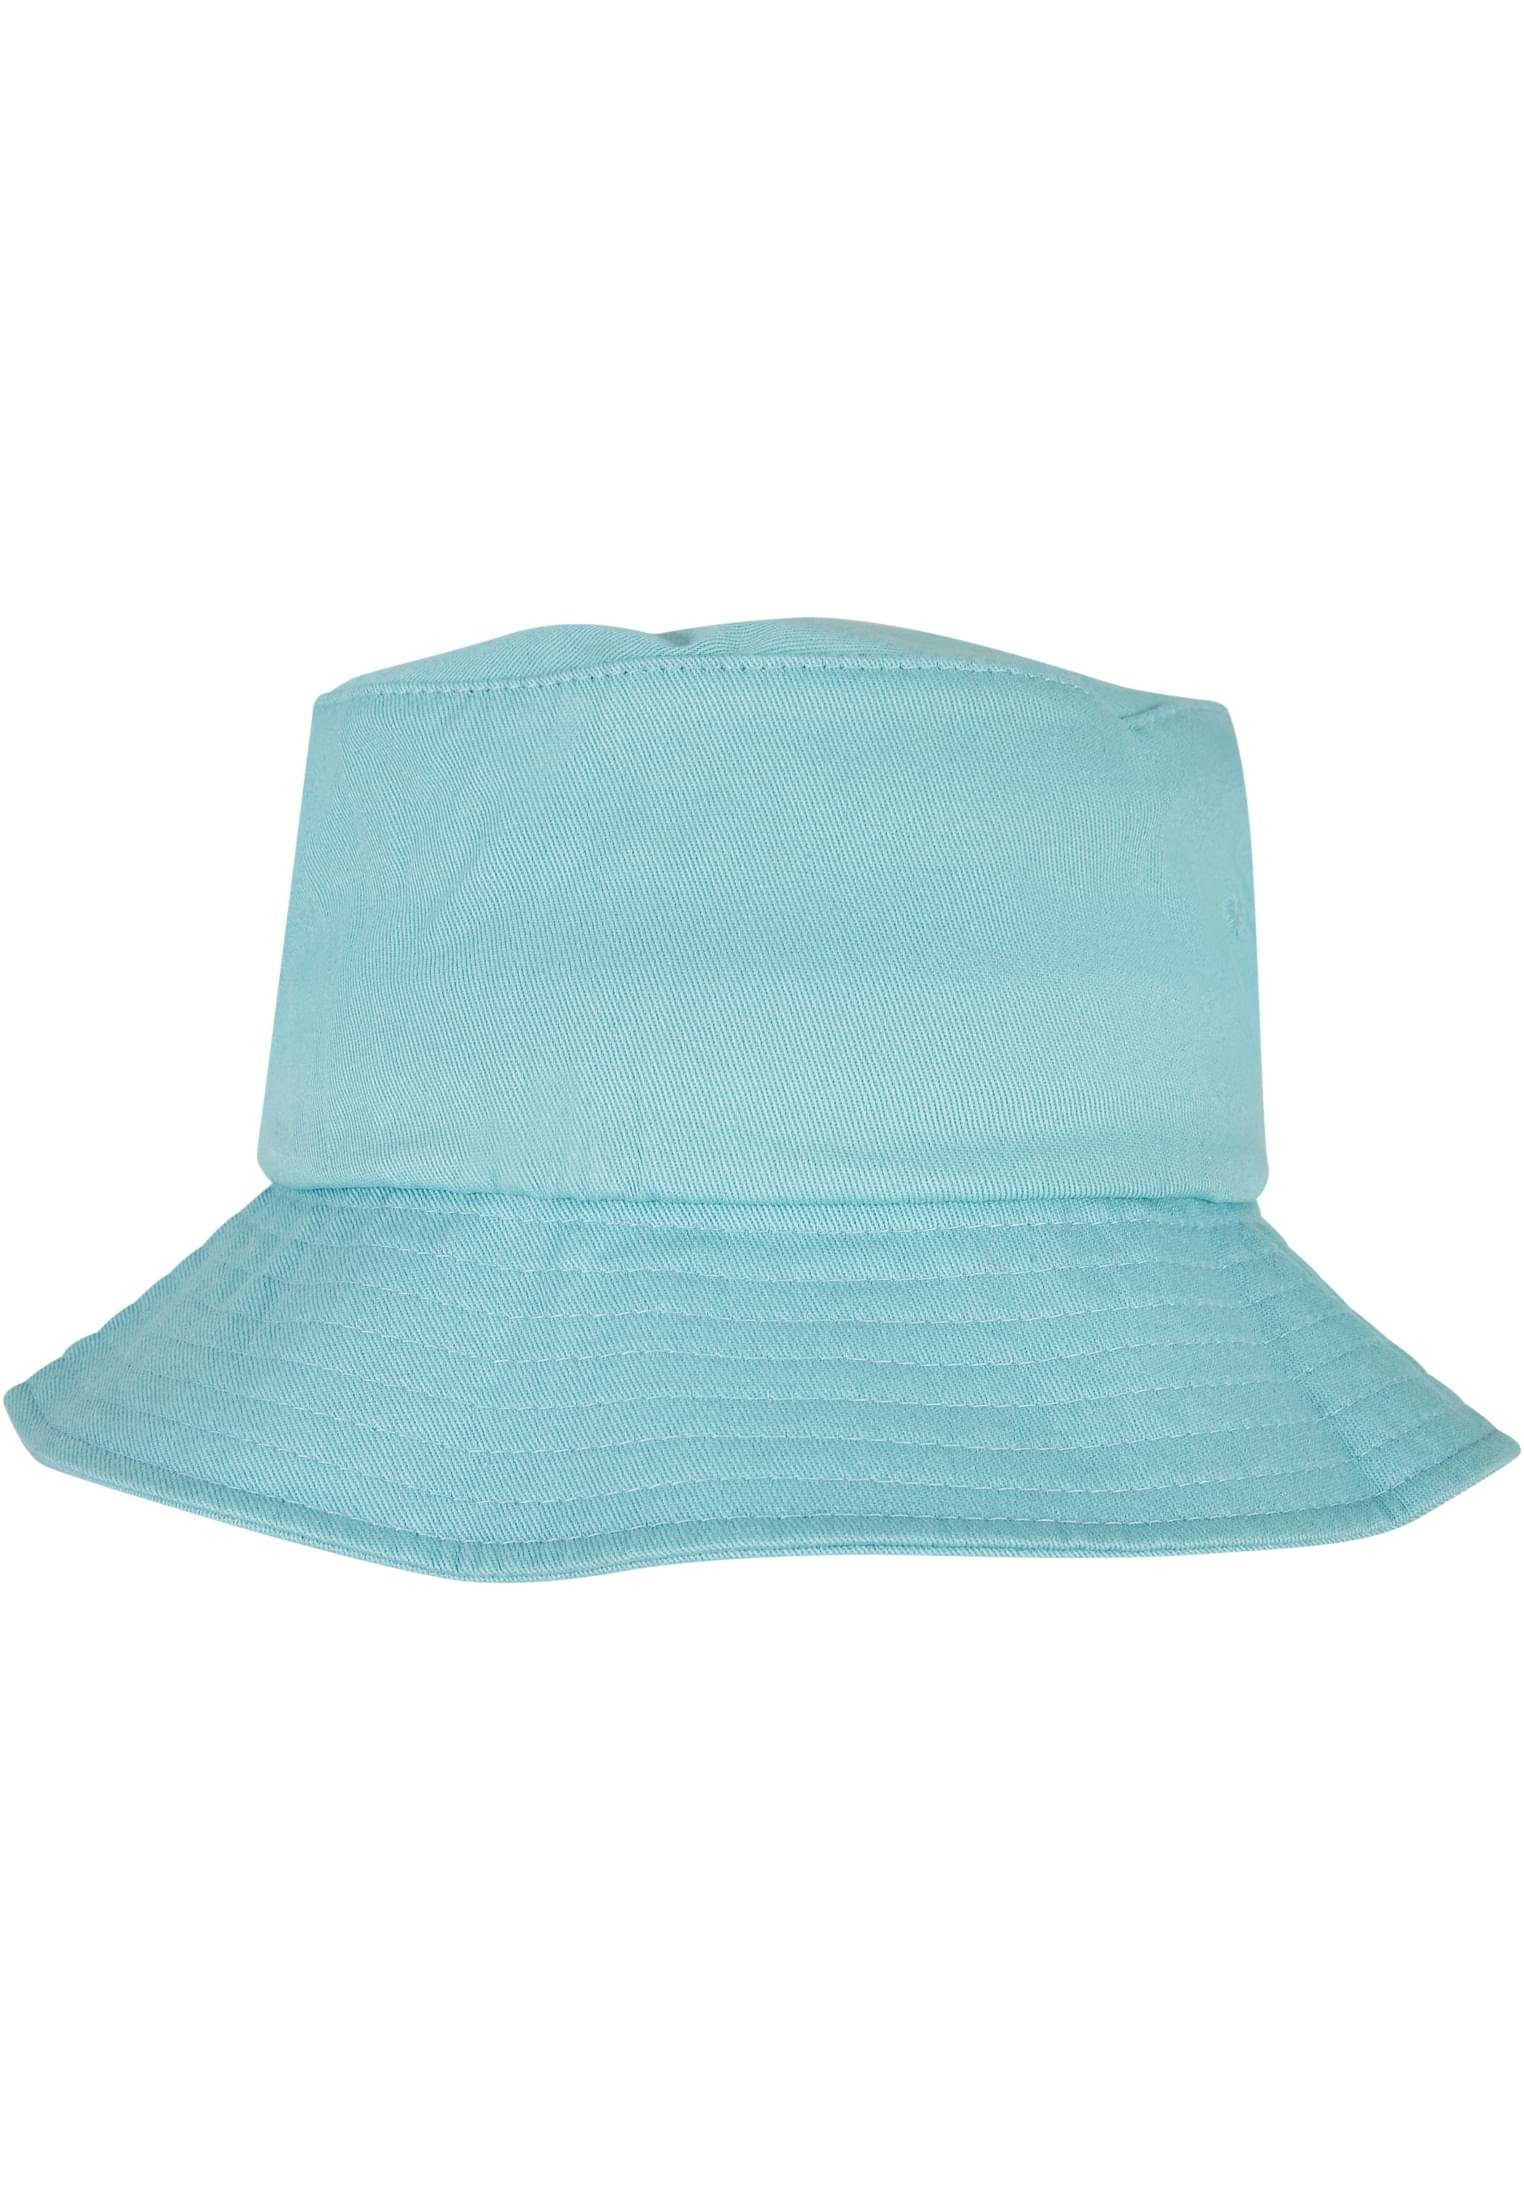 Hat Twill Bucket Cap Cotton airblue Flexfit Flex Flexfit Accessoires